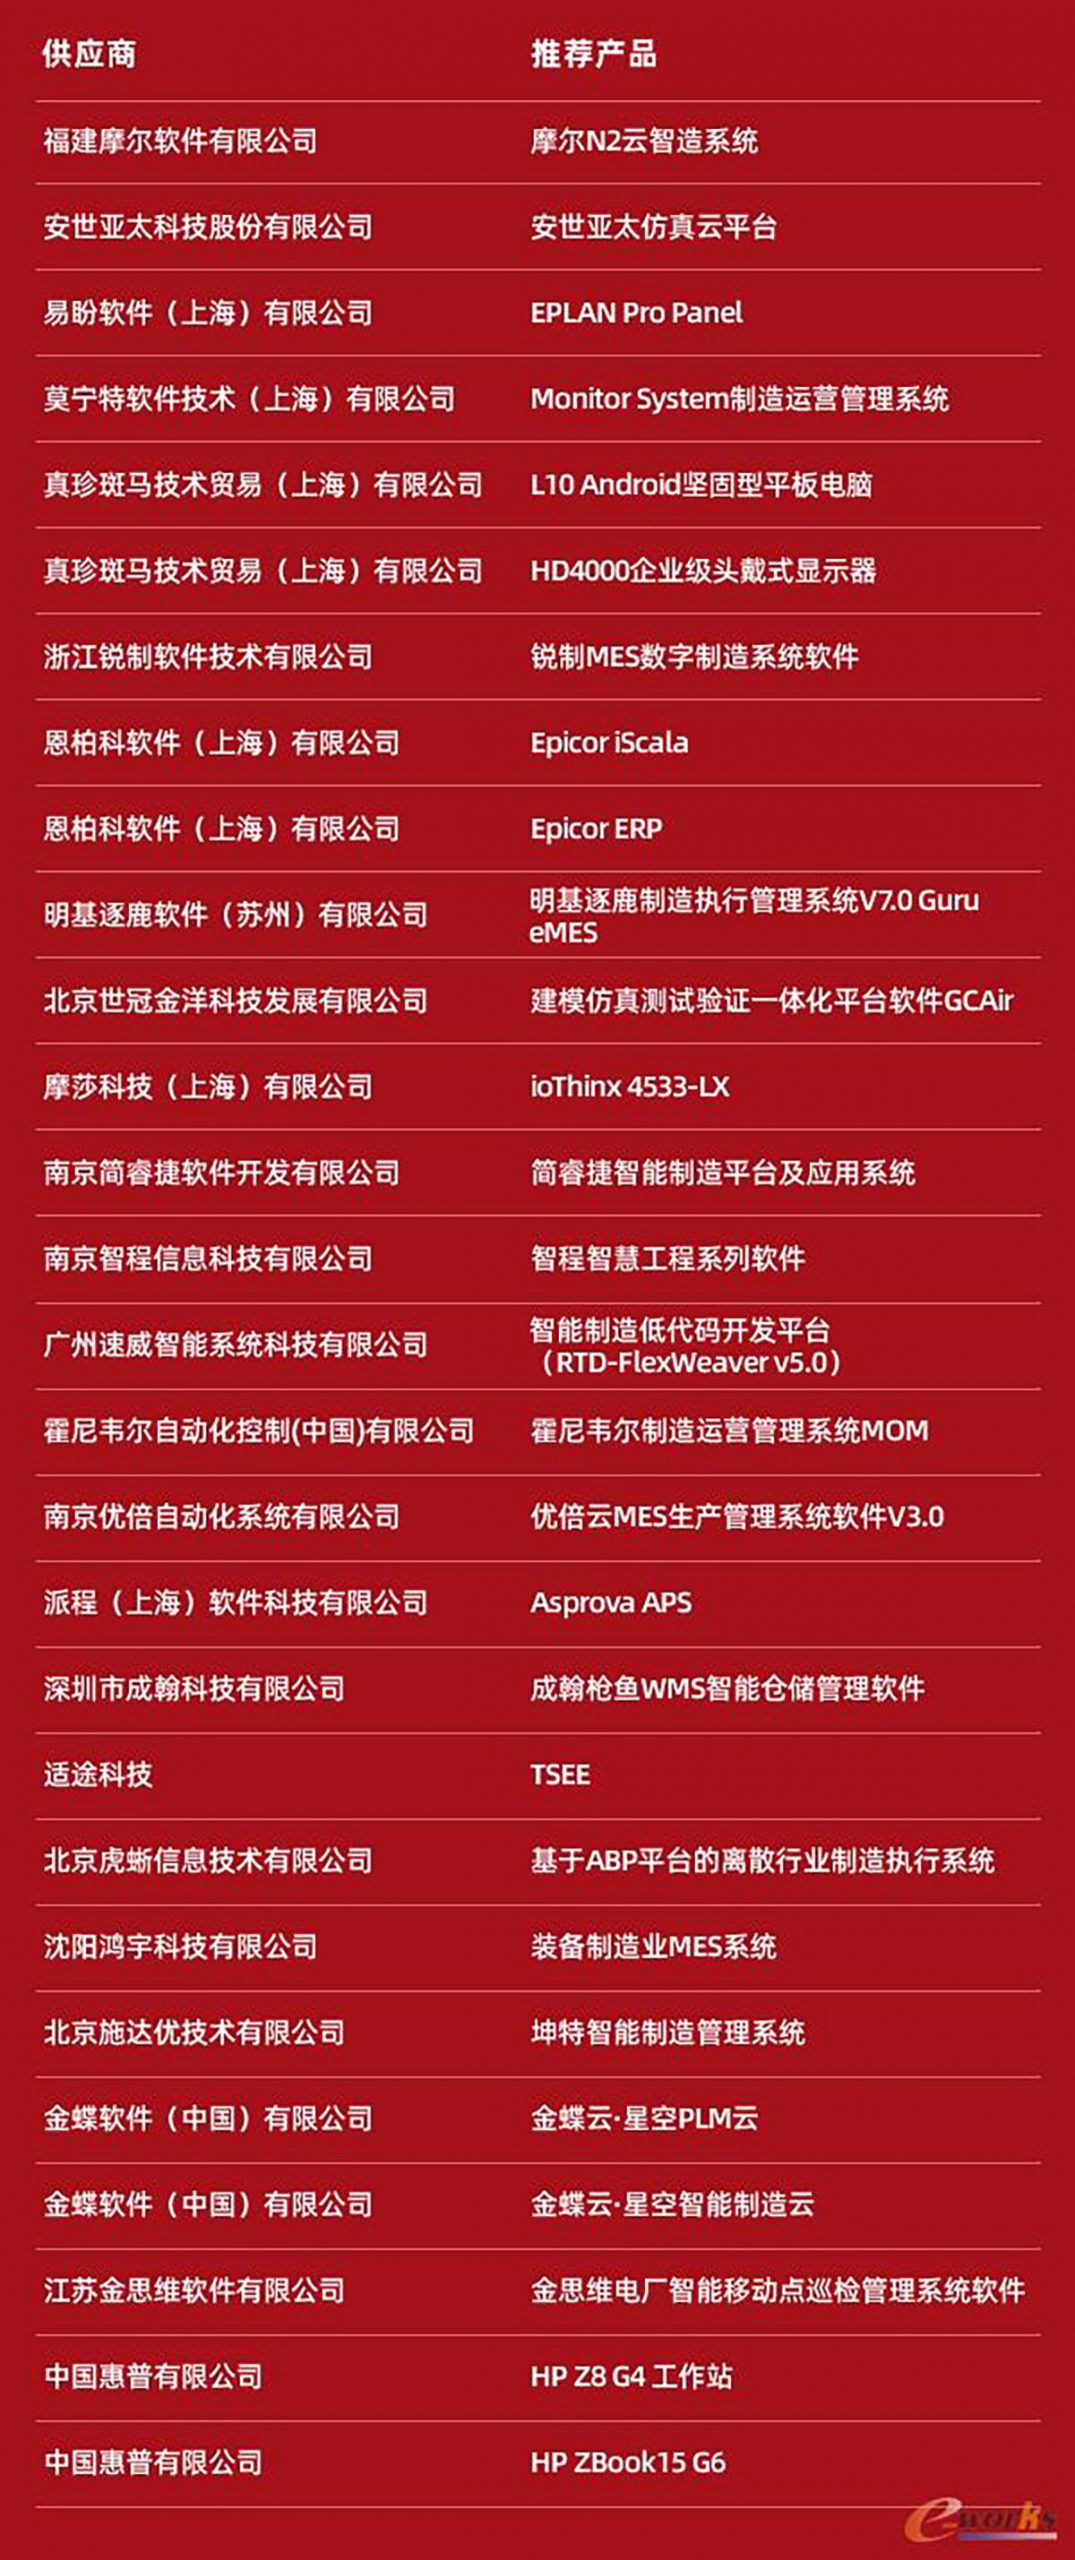 明基逐鹿获颁“2019年度中国智能工厂解决方案杰出供应商”殊荣